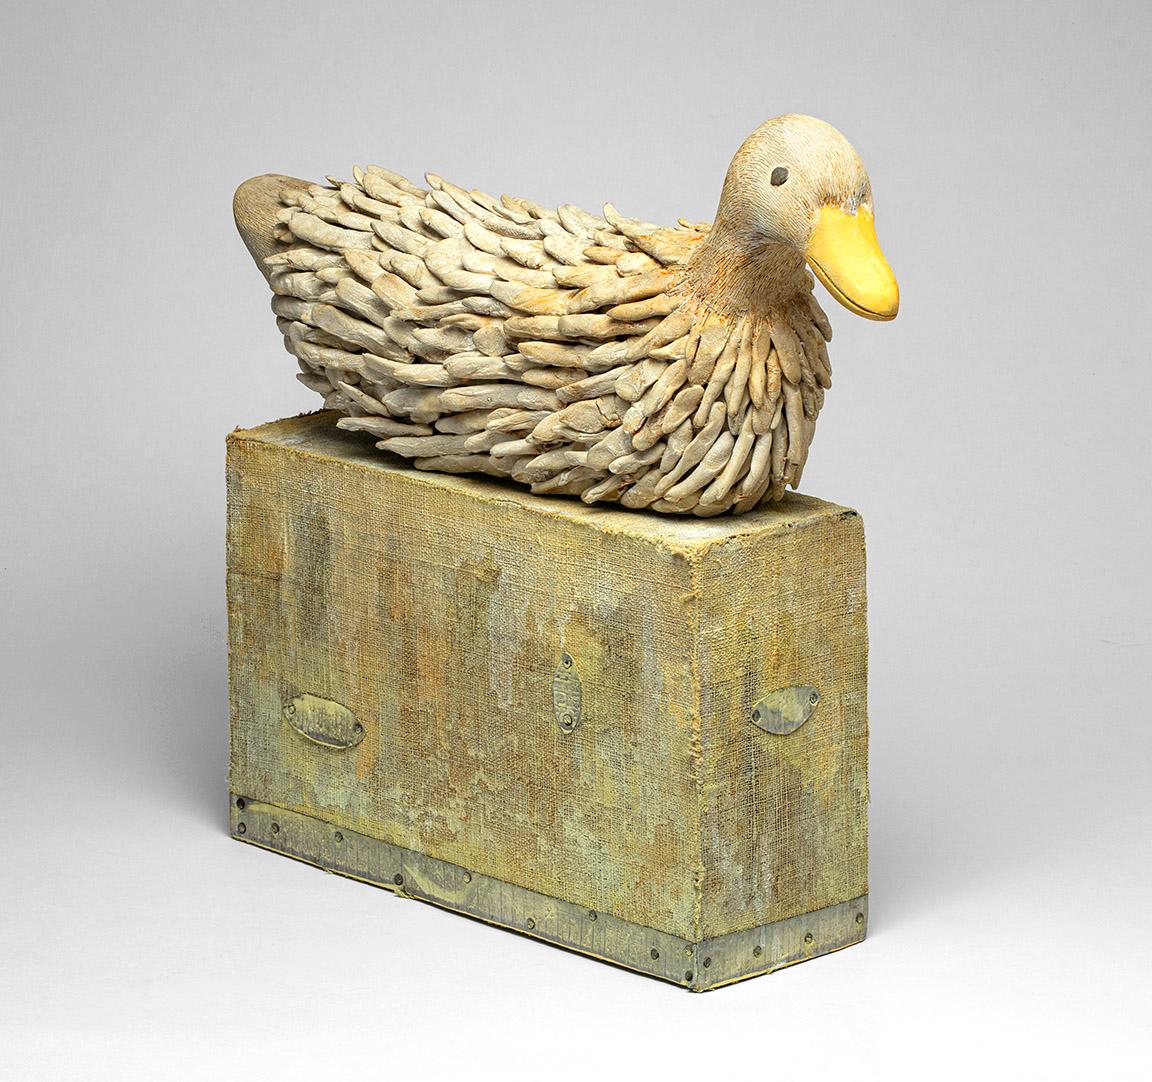 Just Ducky - Sculpture by Robert Adams